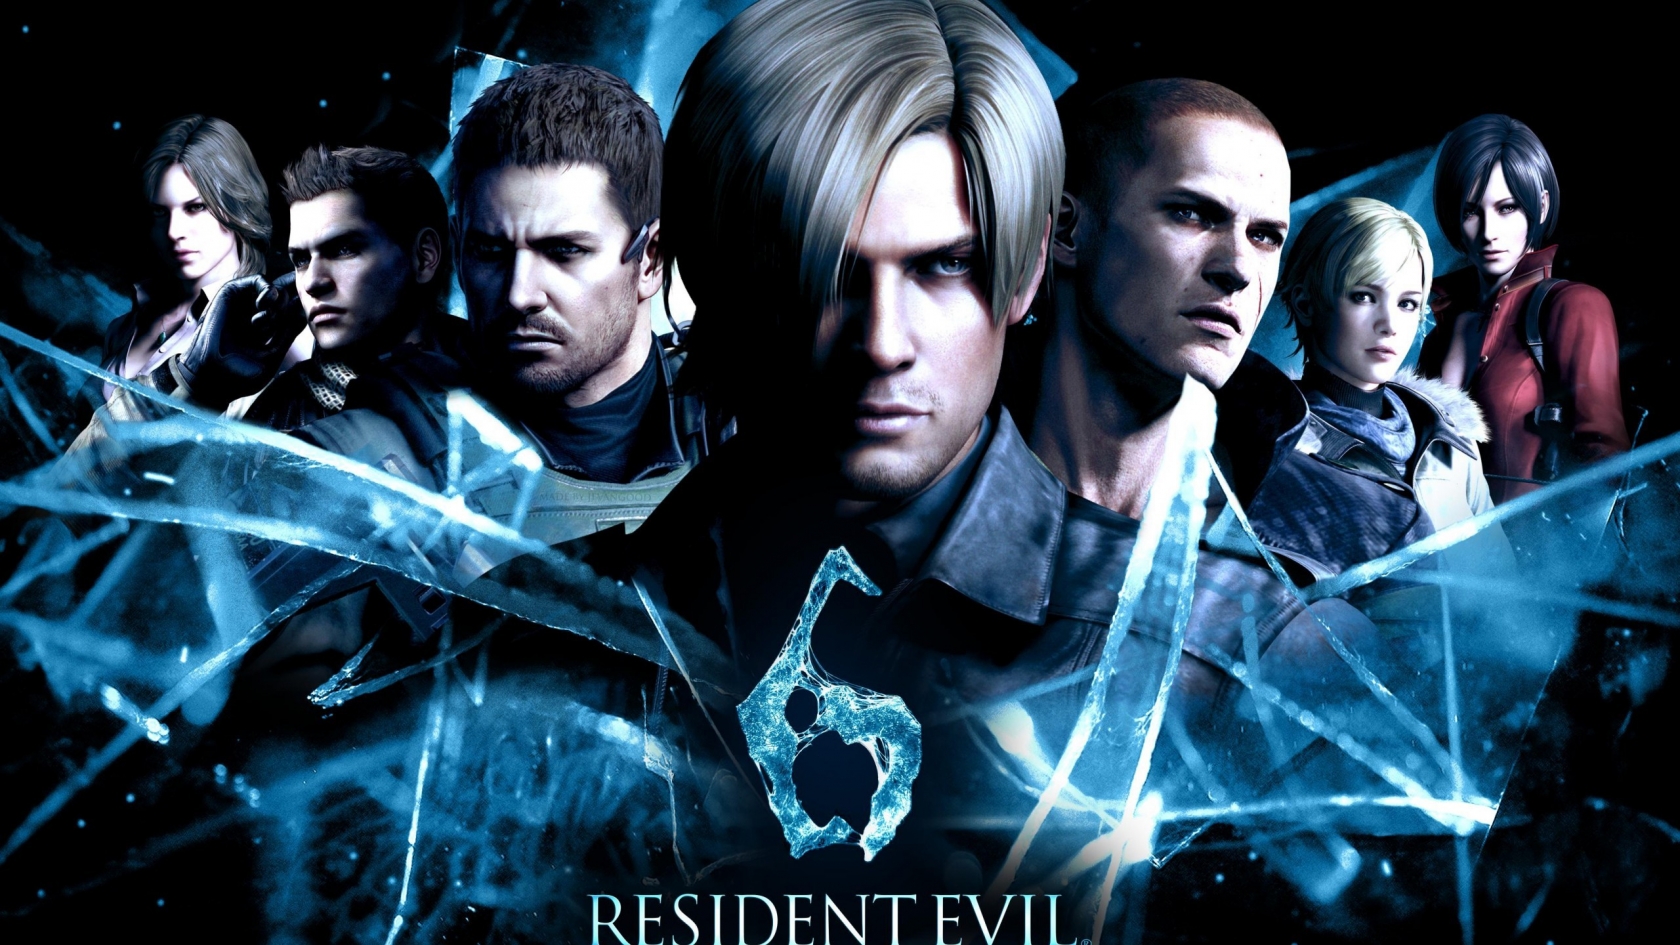 Resident Evil 6 2014 for 1680 x 945 HDTV resolution